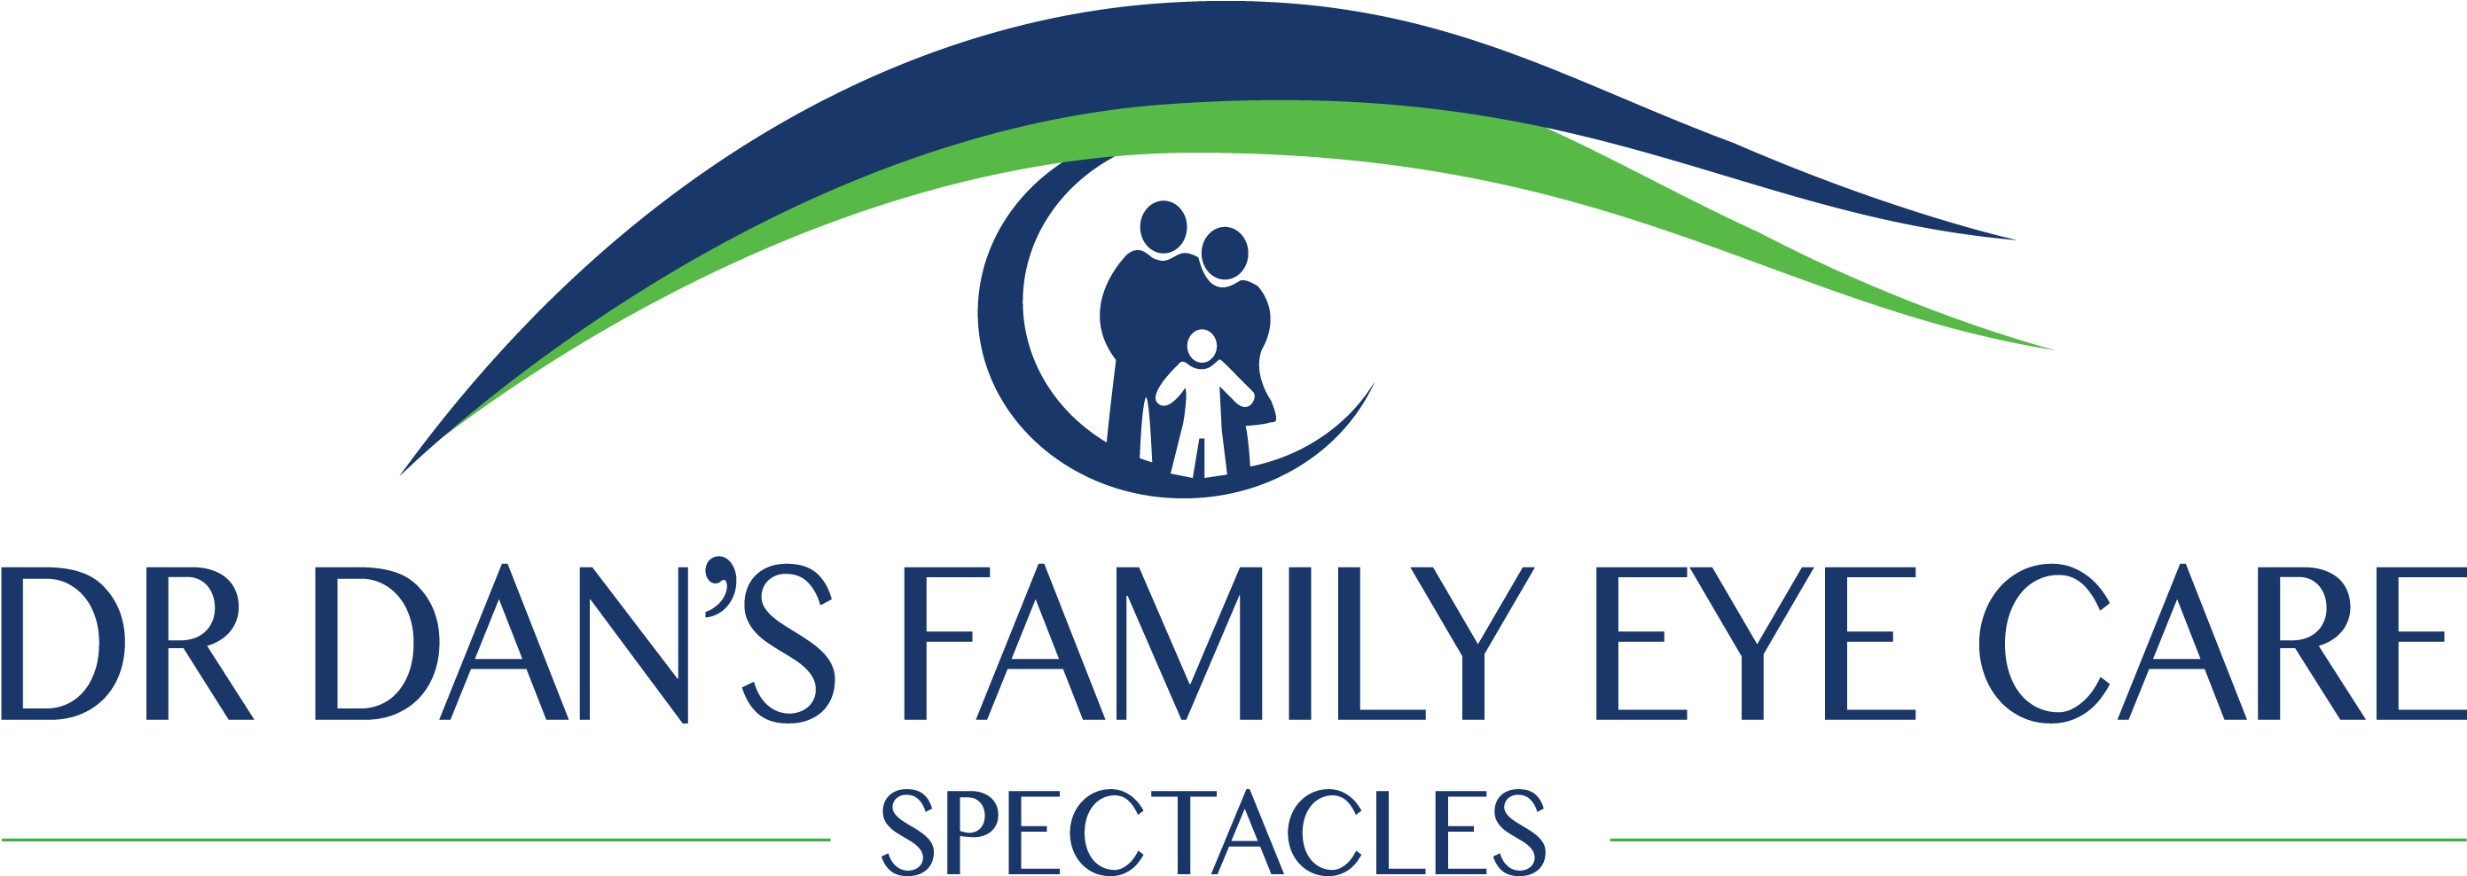 Spectacles Family Eye Care - Dr Dans Family Eye Care (2781x987)